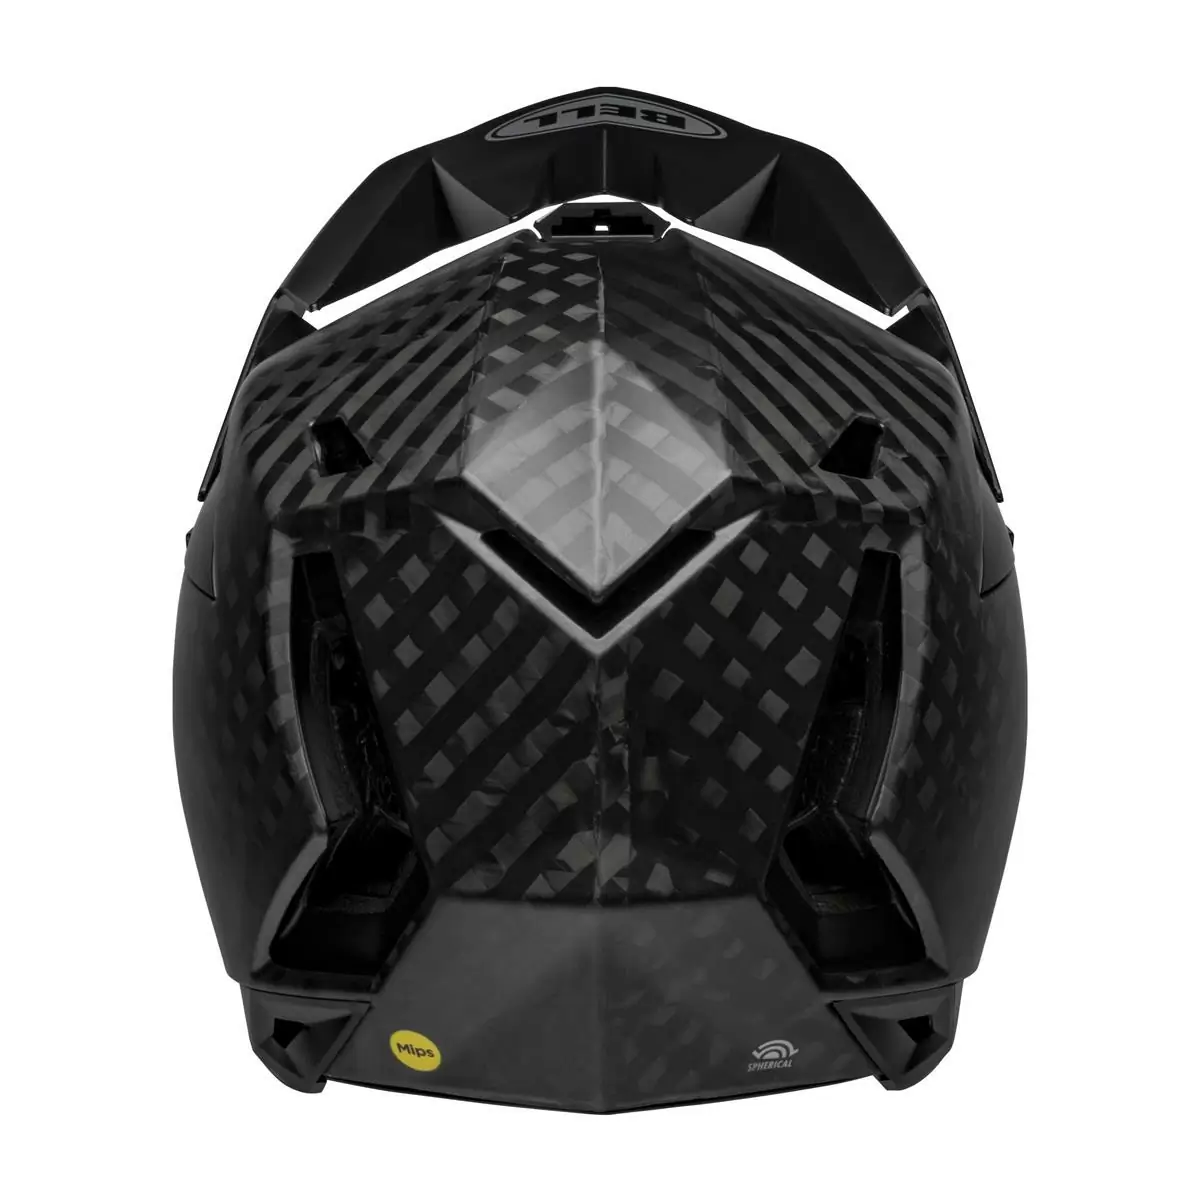 Full-10 Spherical Matte Black Carbon Full Face Helmet Size XS/S (51-55cm) #3